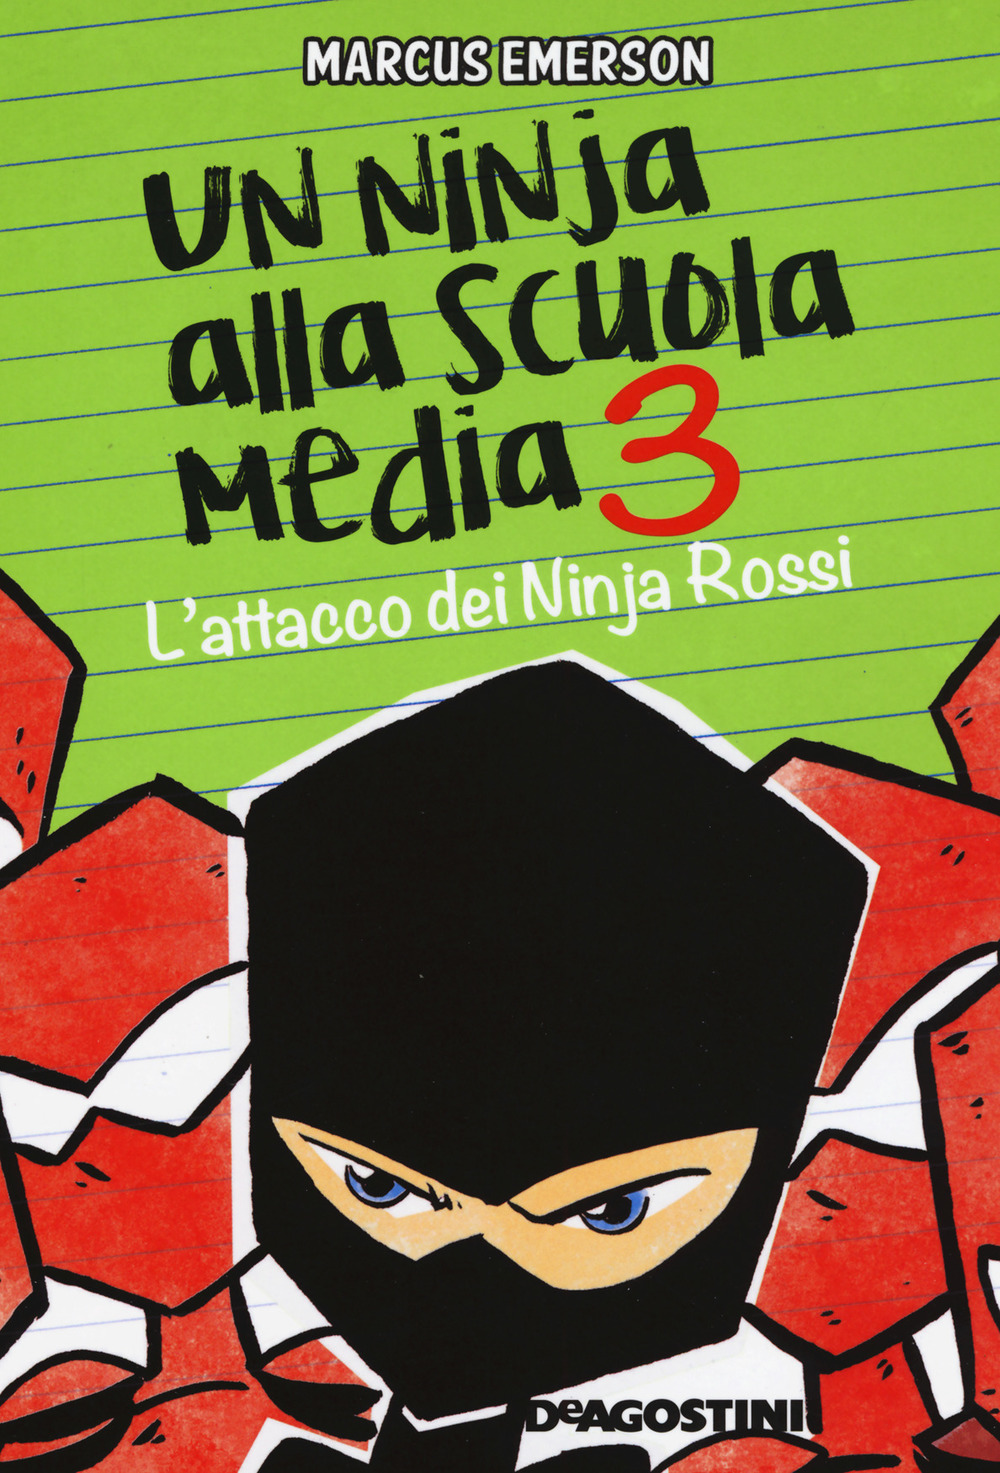 L'attacco dei Ninja Rossi. Un ninja alla scuola media. Vol. 3